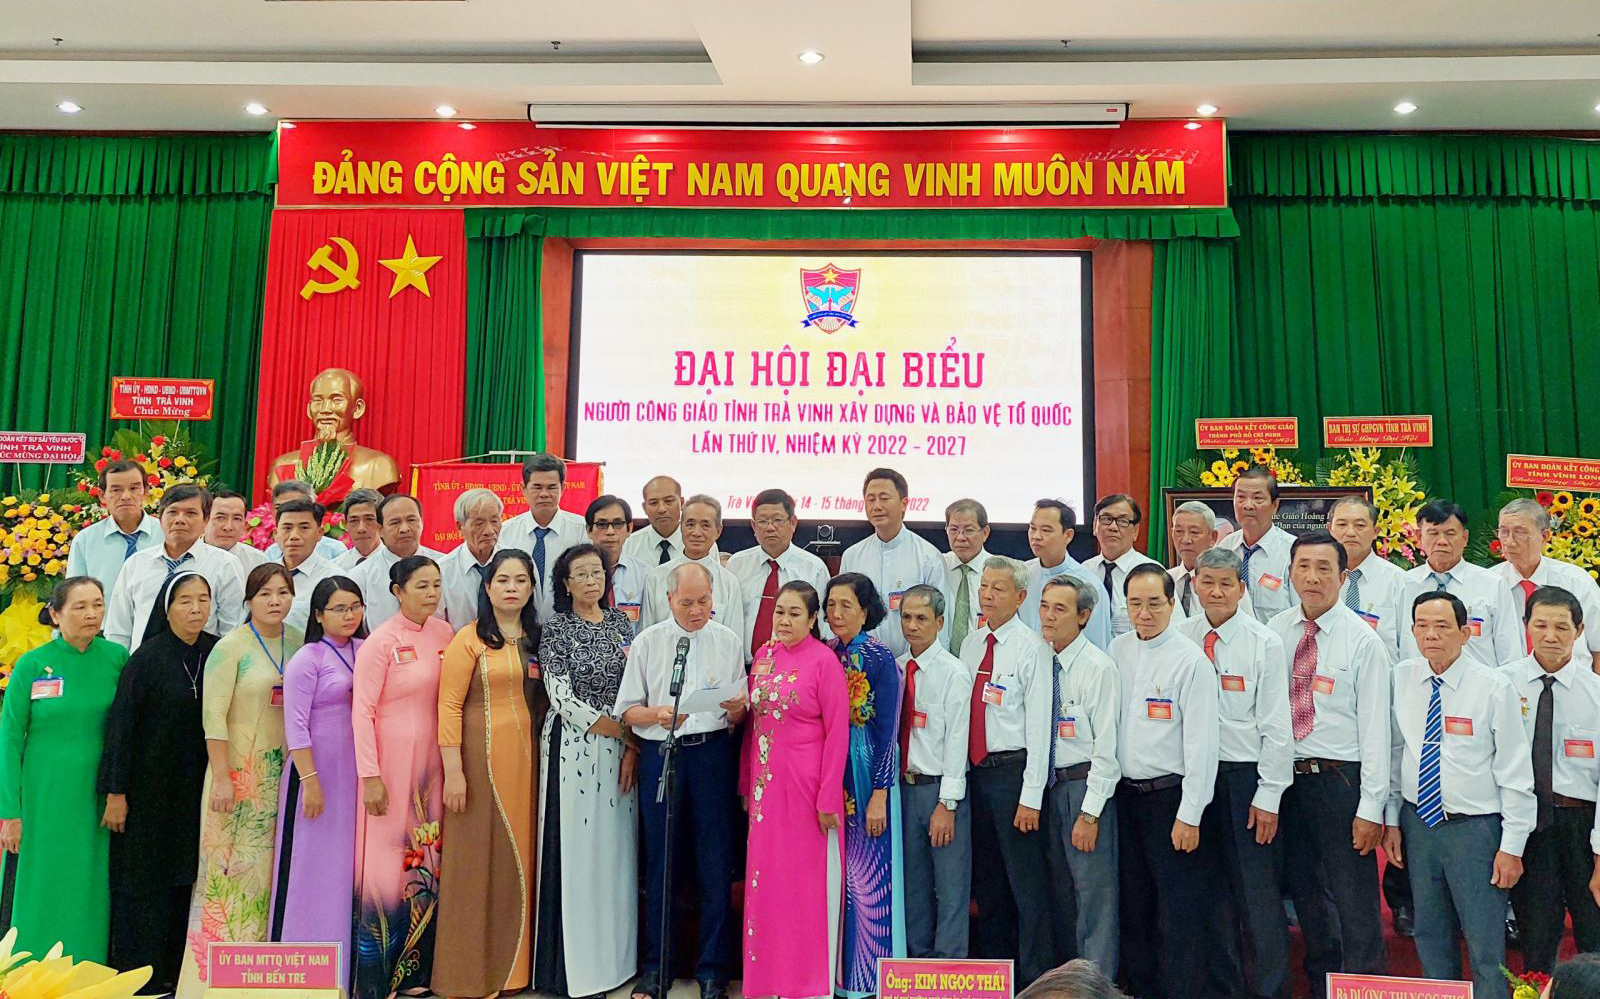 Ủy viên UBĐKCG tỉnh Trà Vinh, nhiệm kỳ 2022 - 2027 ra mắt Đại hội. 